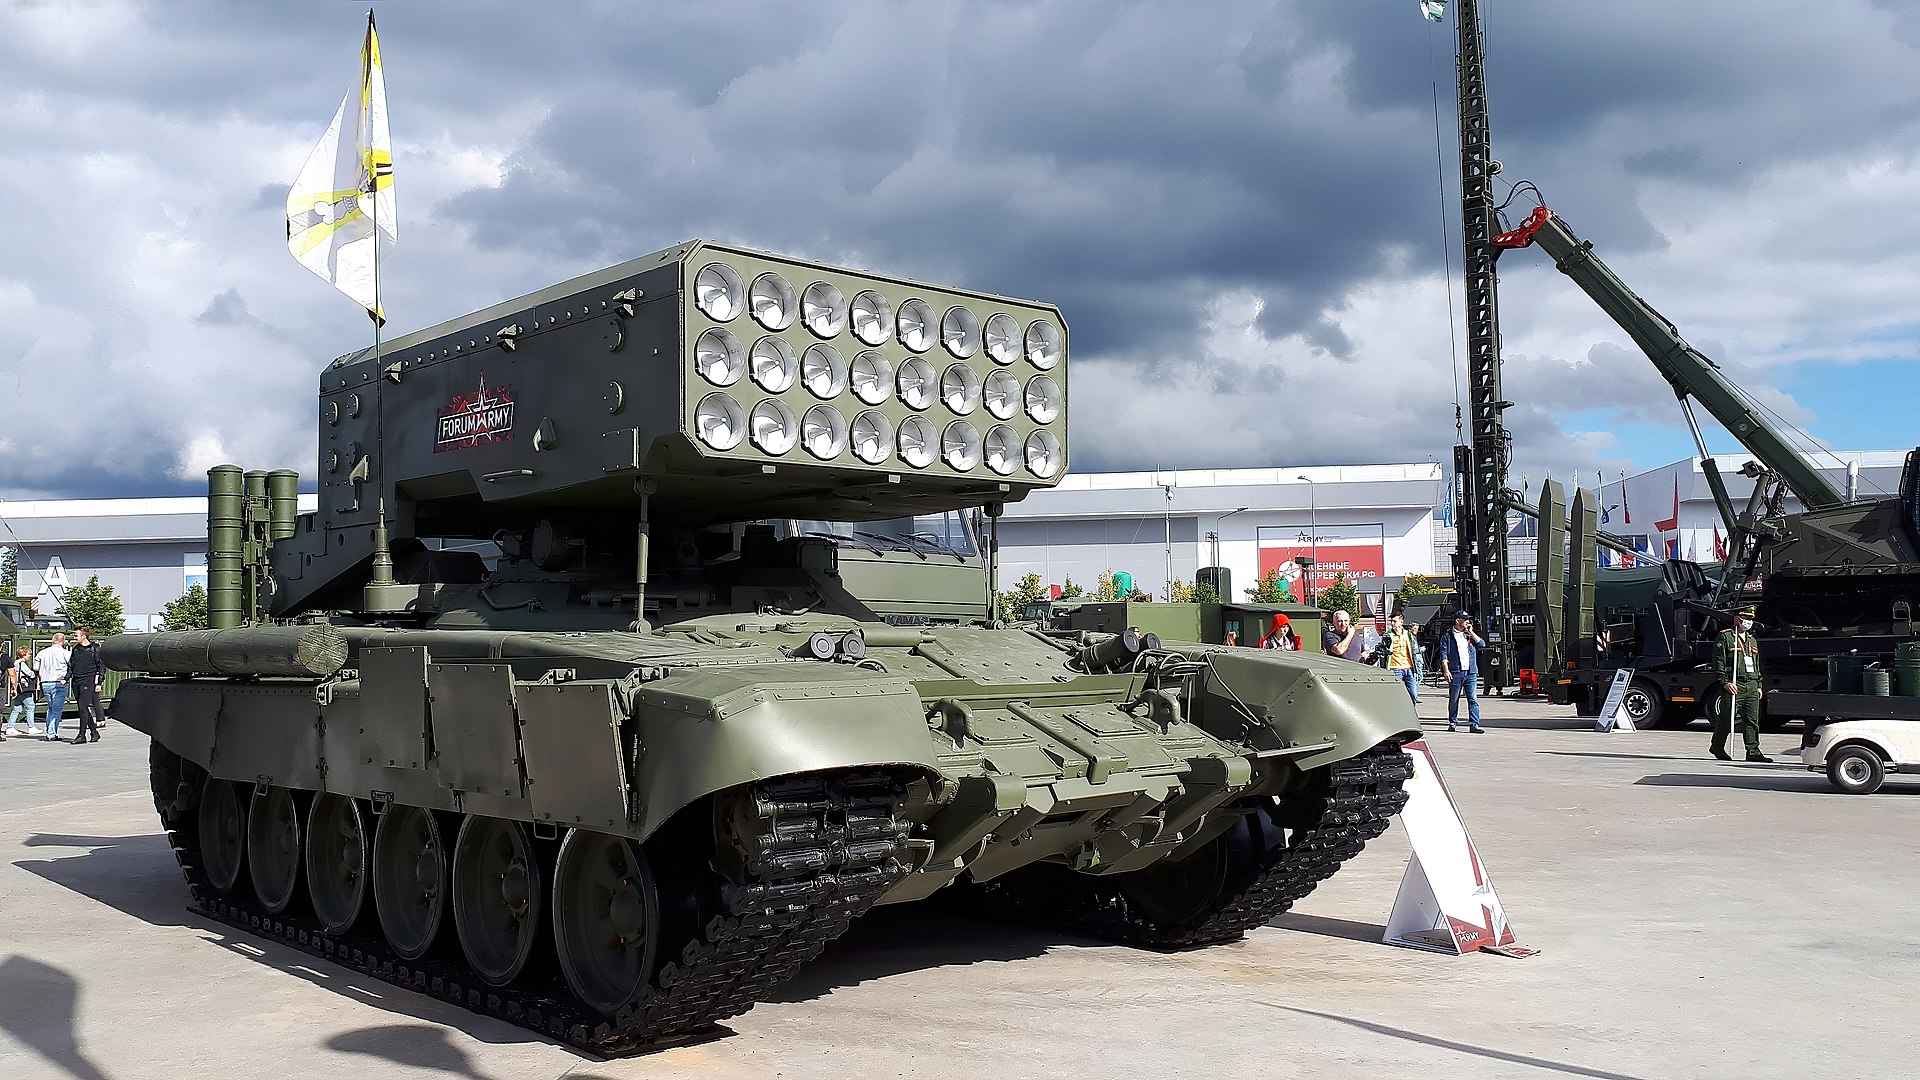 Die AFU beschlagnahmte die stärkste nichtnukleare Waffe Russlands, die TOS-1A Solntsepyok, mit voller Munition